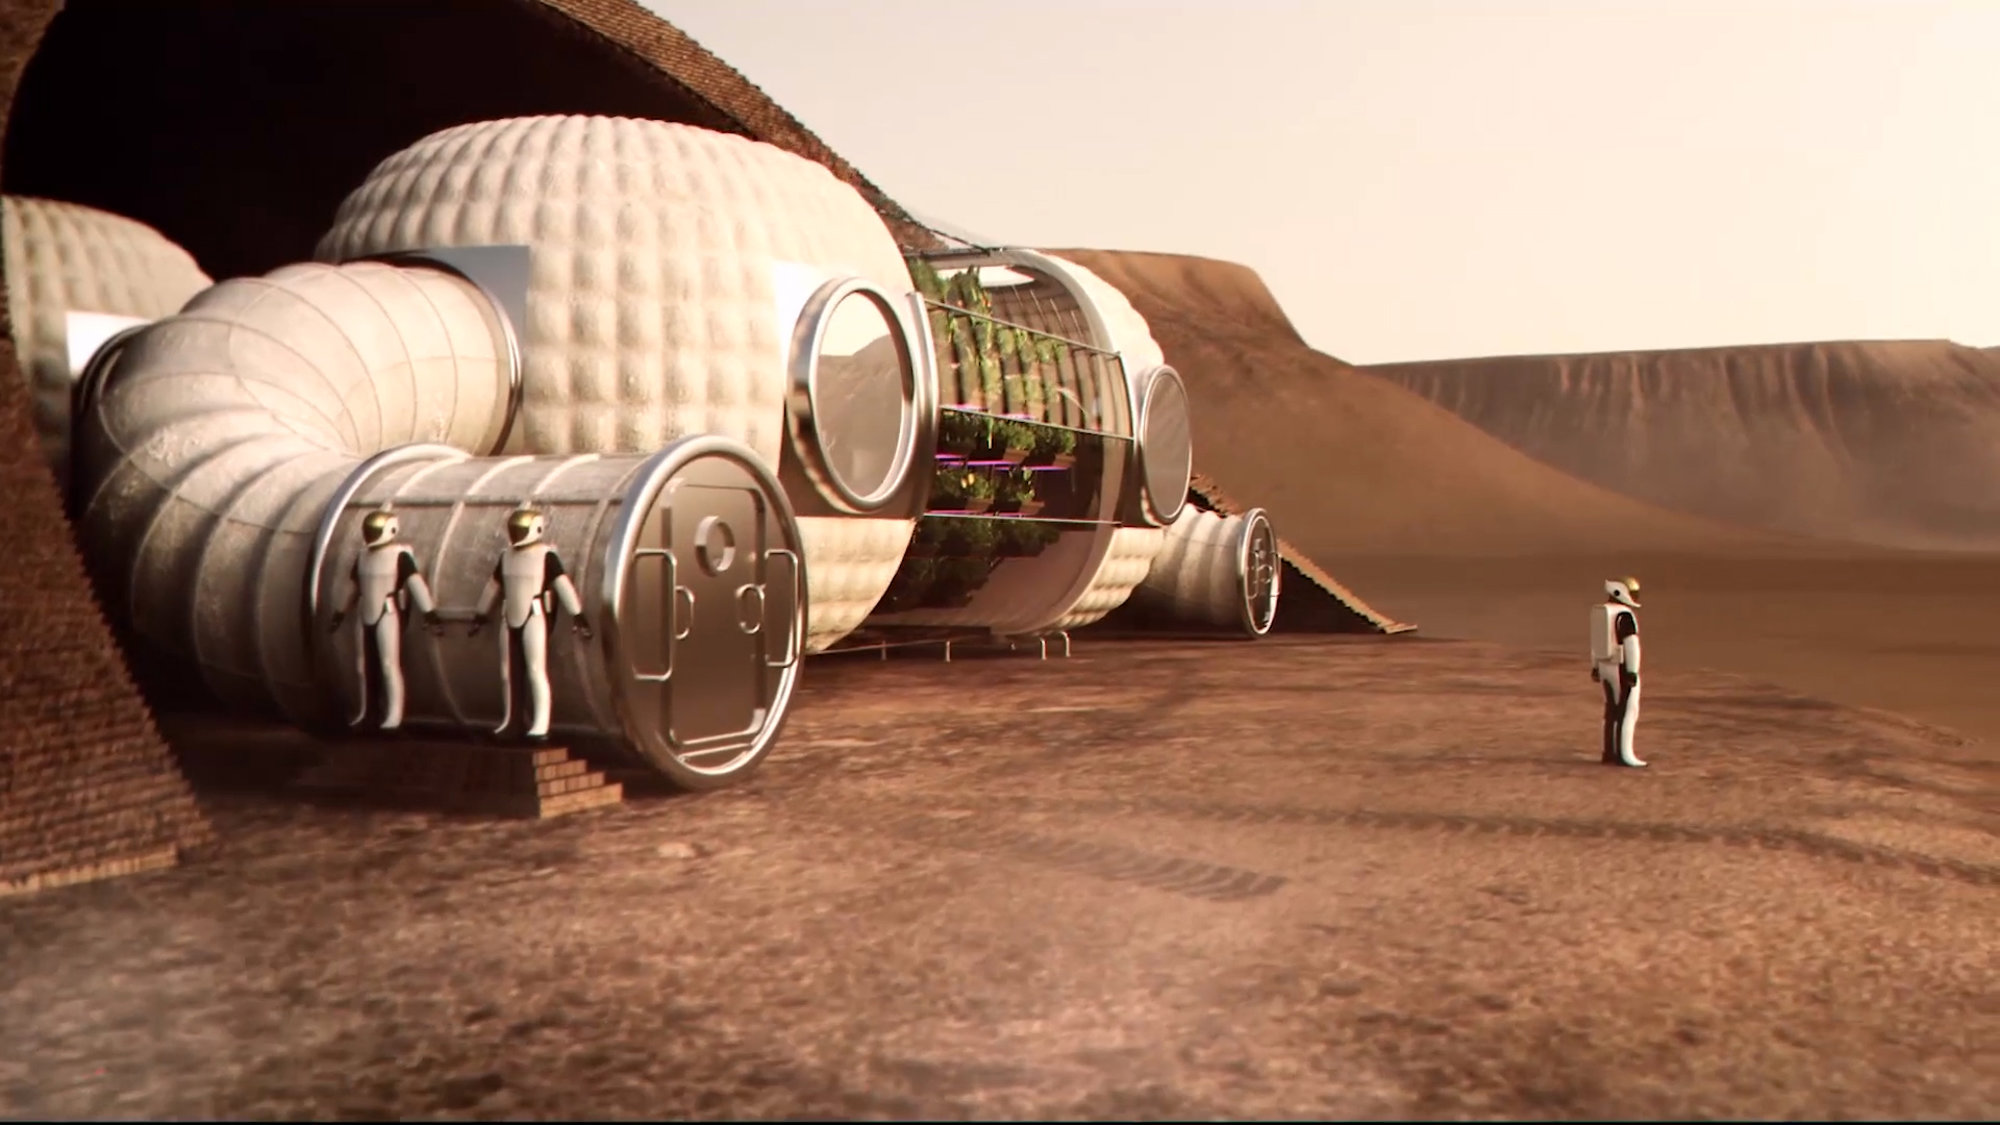 3D Printed Mars Habitation